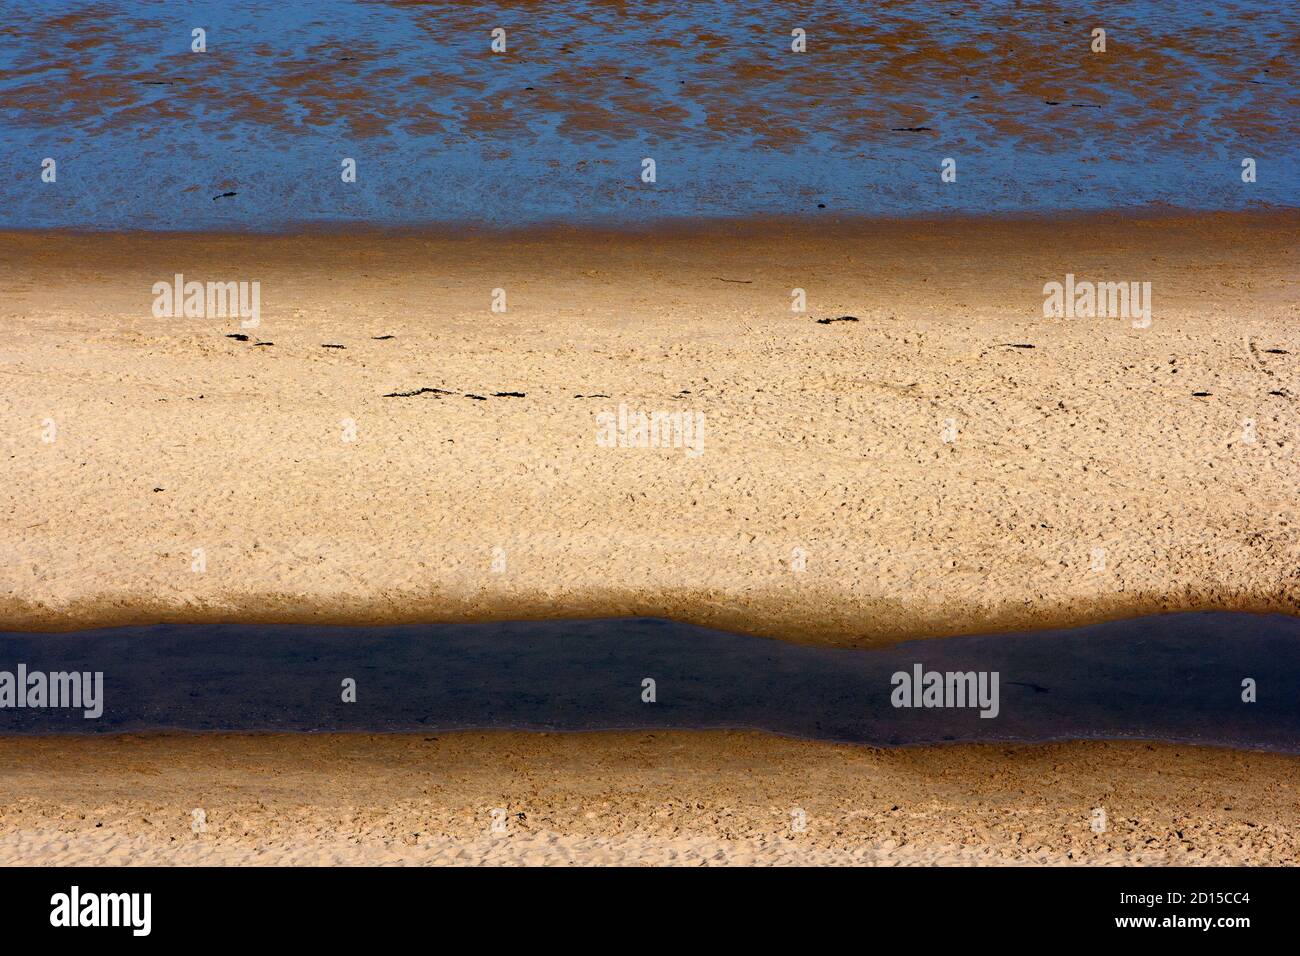 Strand, Meer, Küste, abstraktes Foto, minimalistische Strand Foto, blau gelb braun abstrakt, Meer und Sand, minimalistische Landschaft, bunte Strand Foto Stockfoto